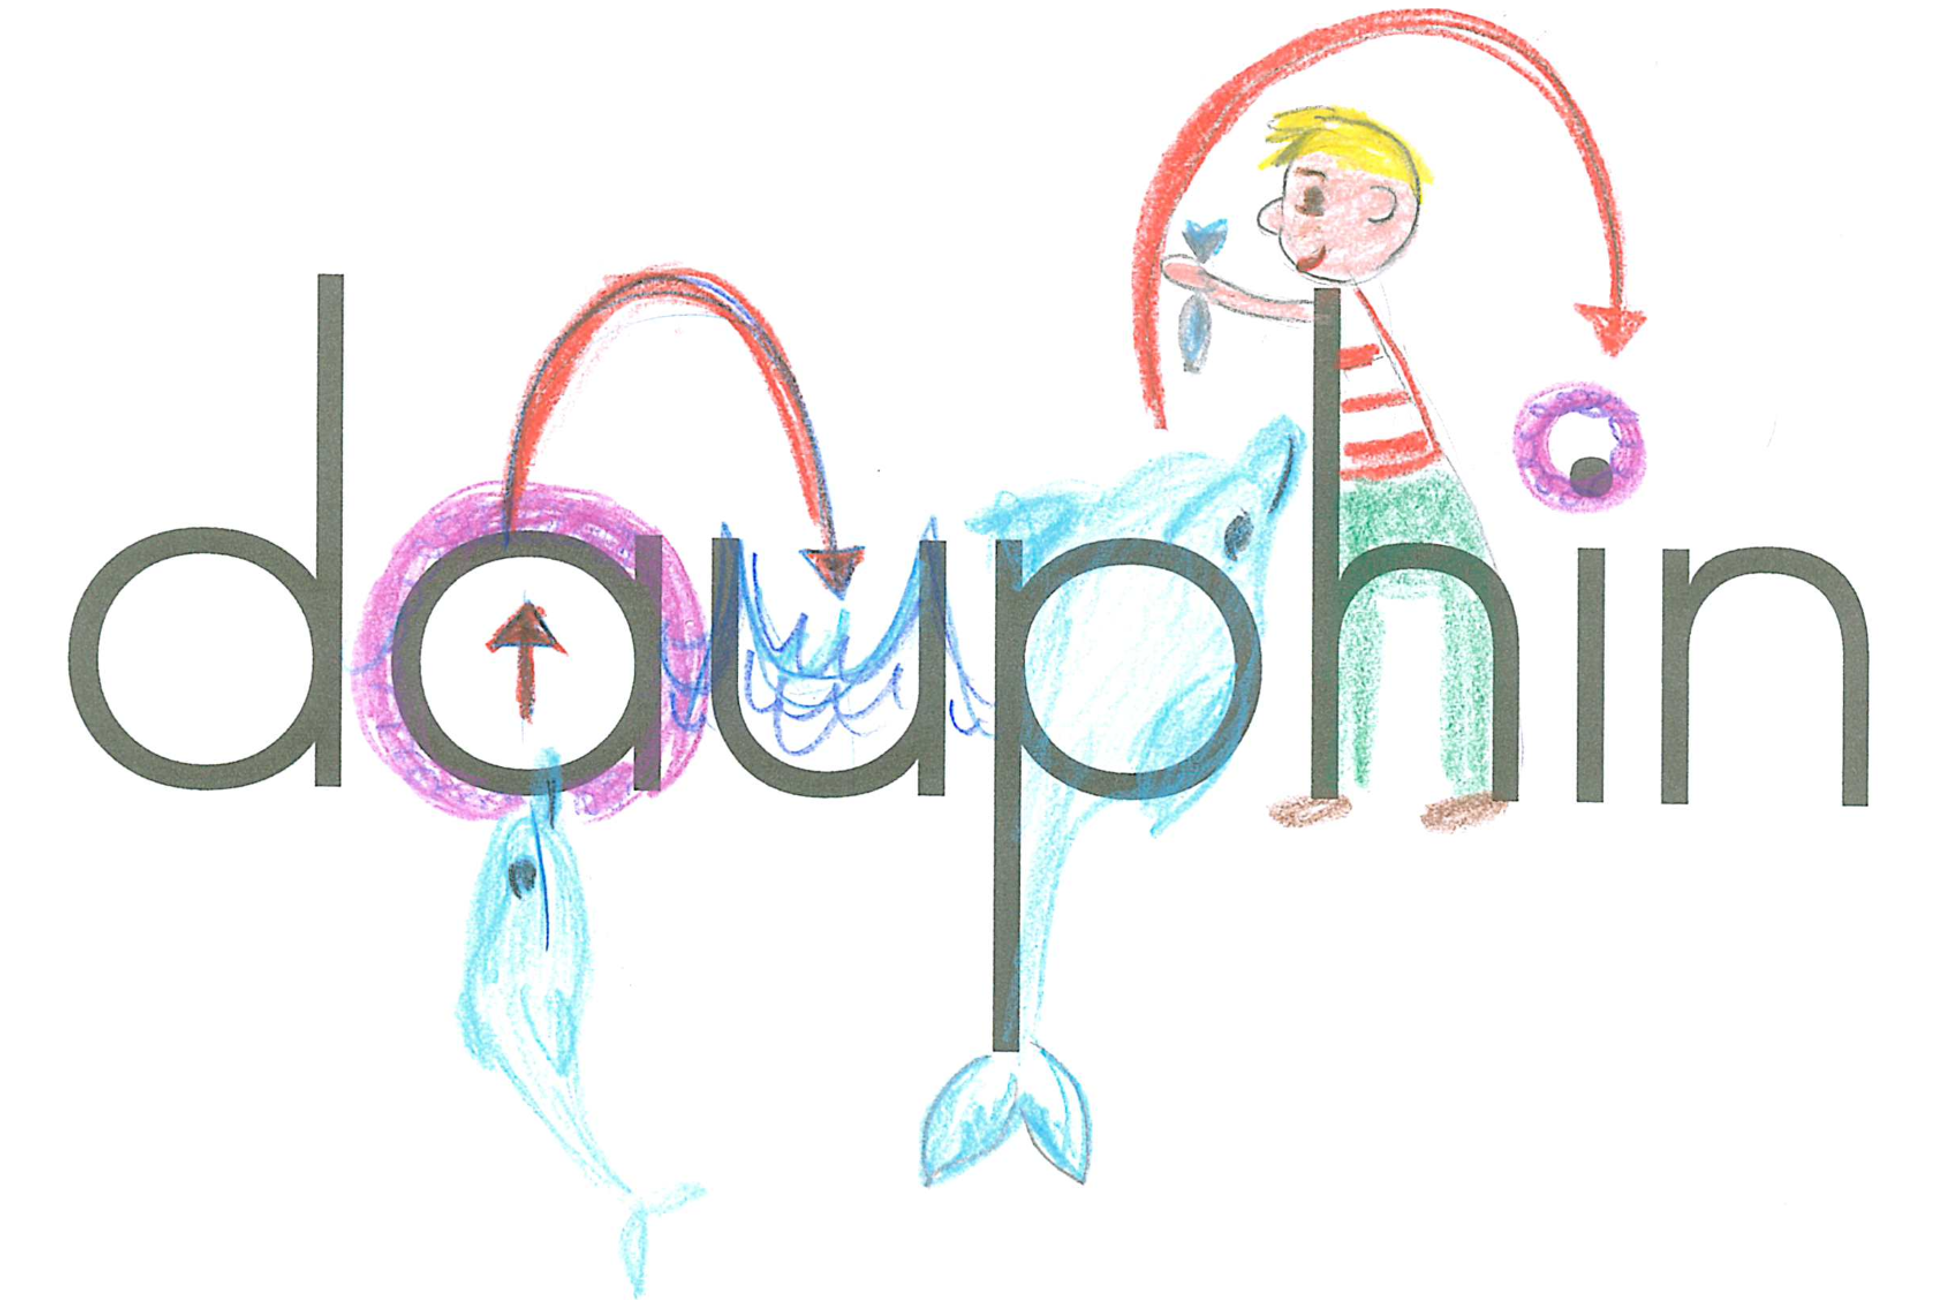 dauphin